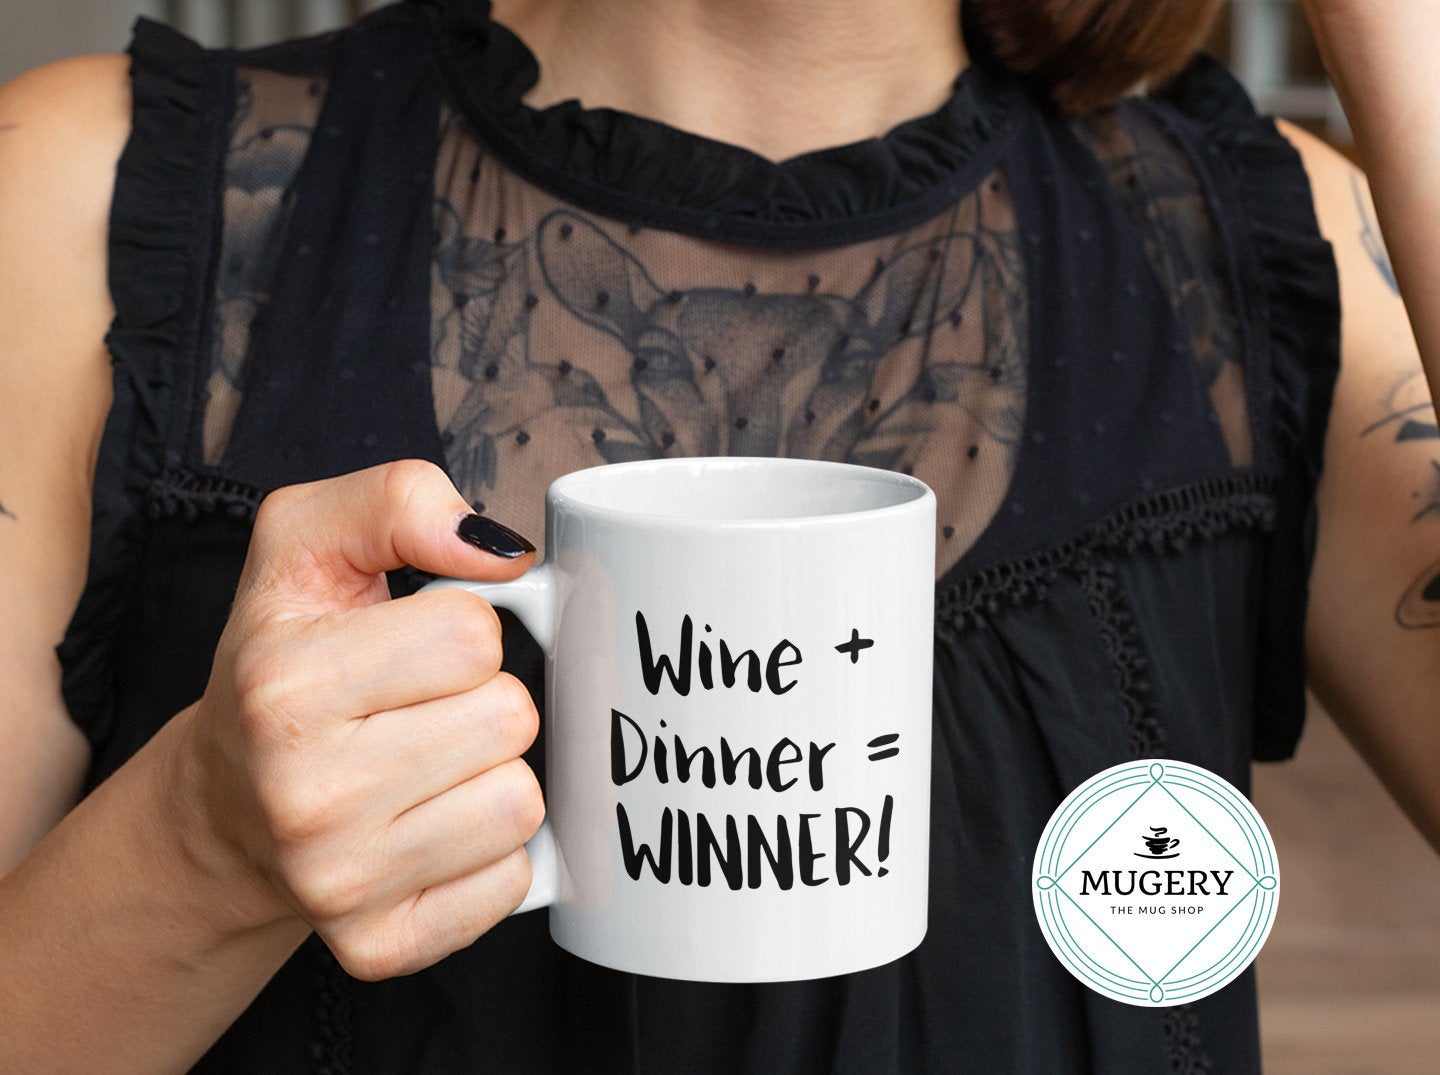 Wine + Dinner = WINNER! Mug